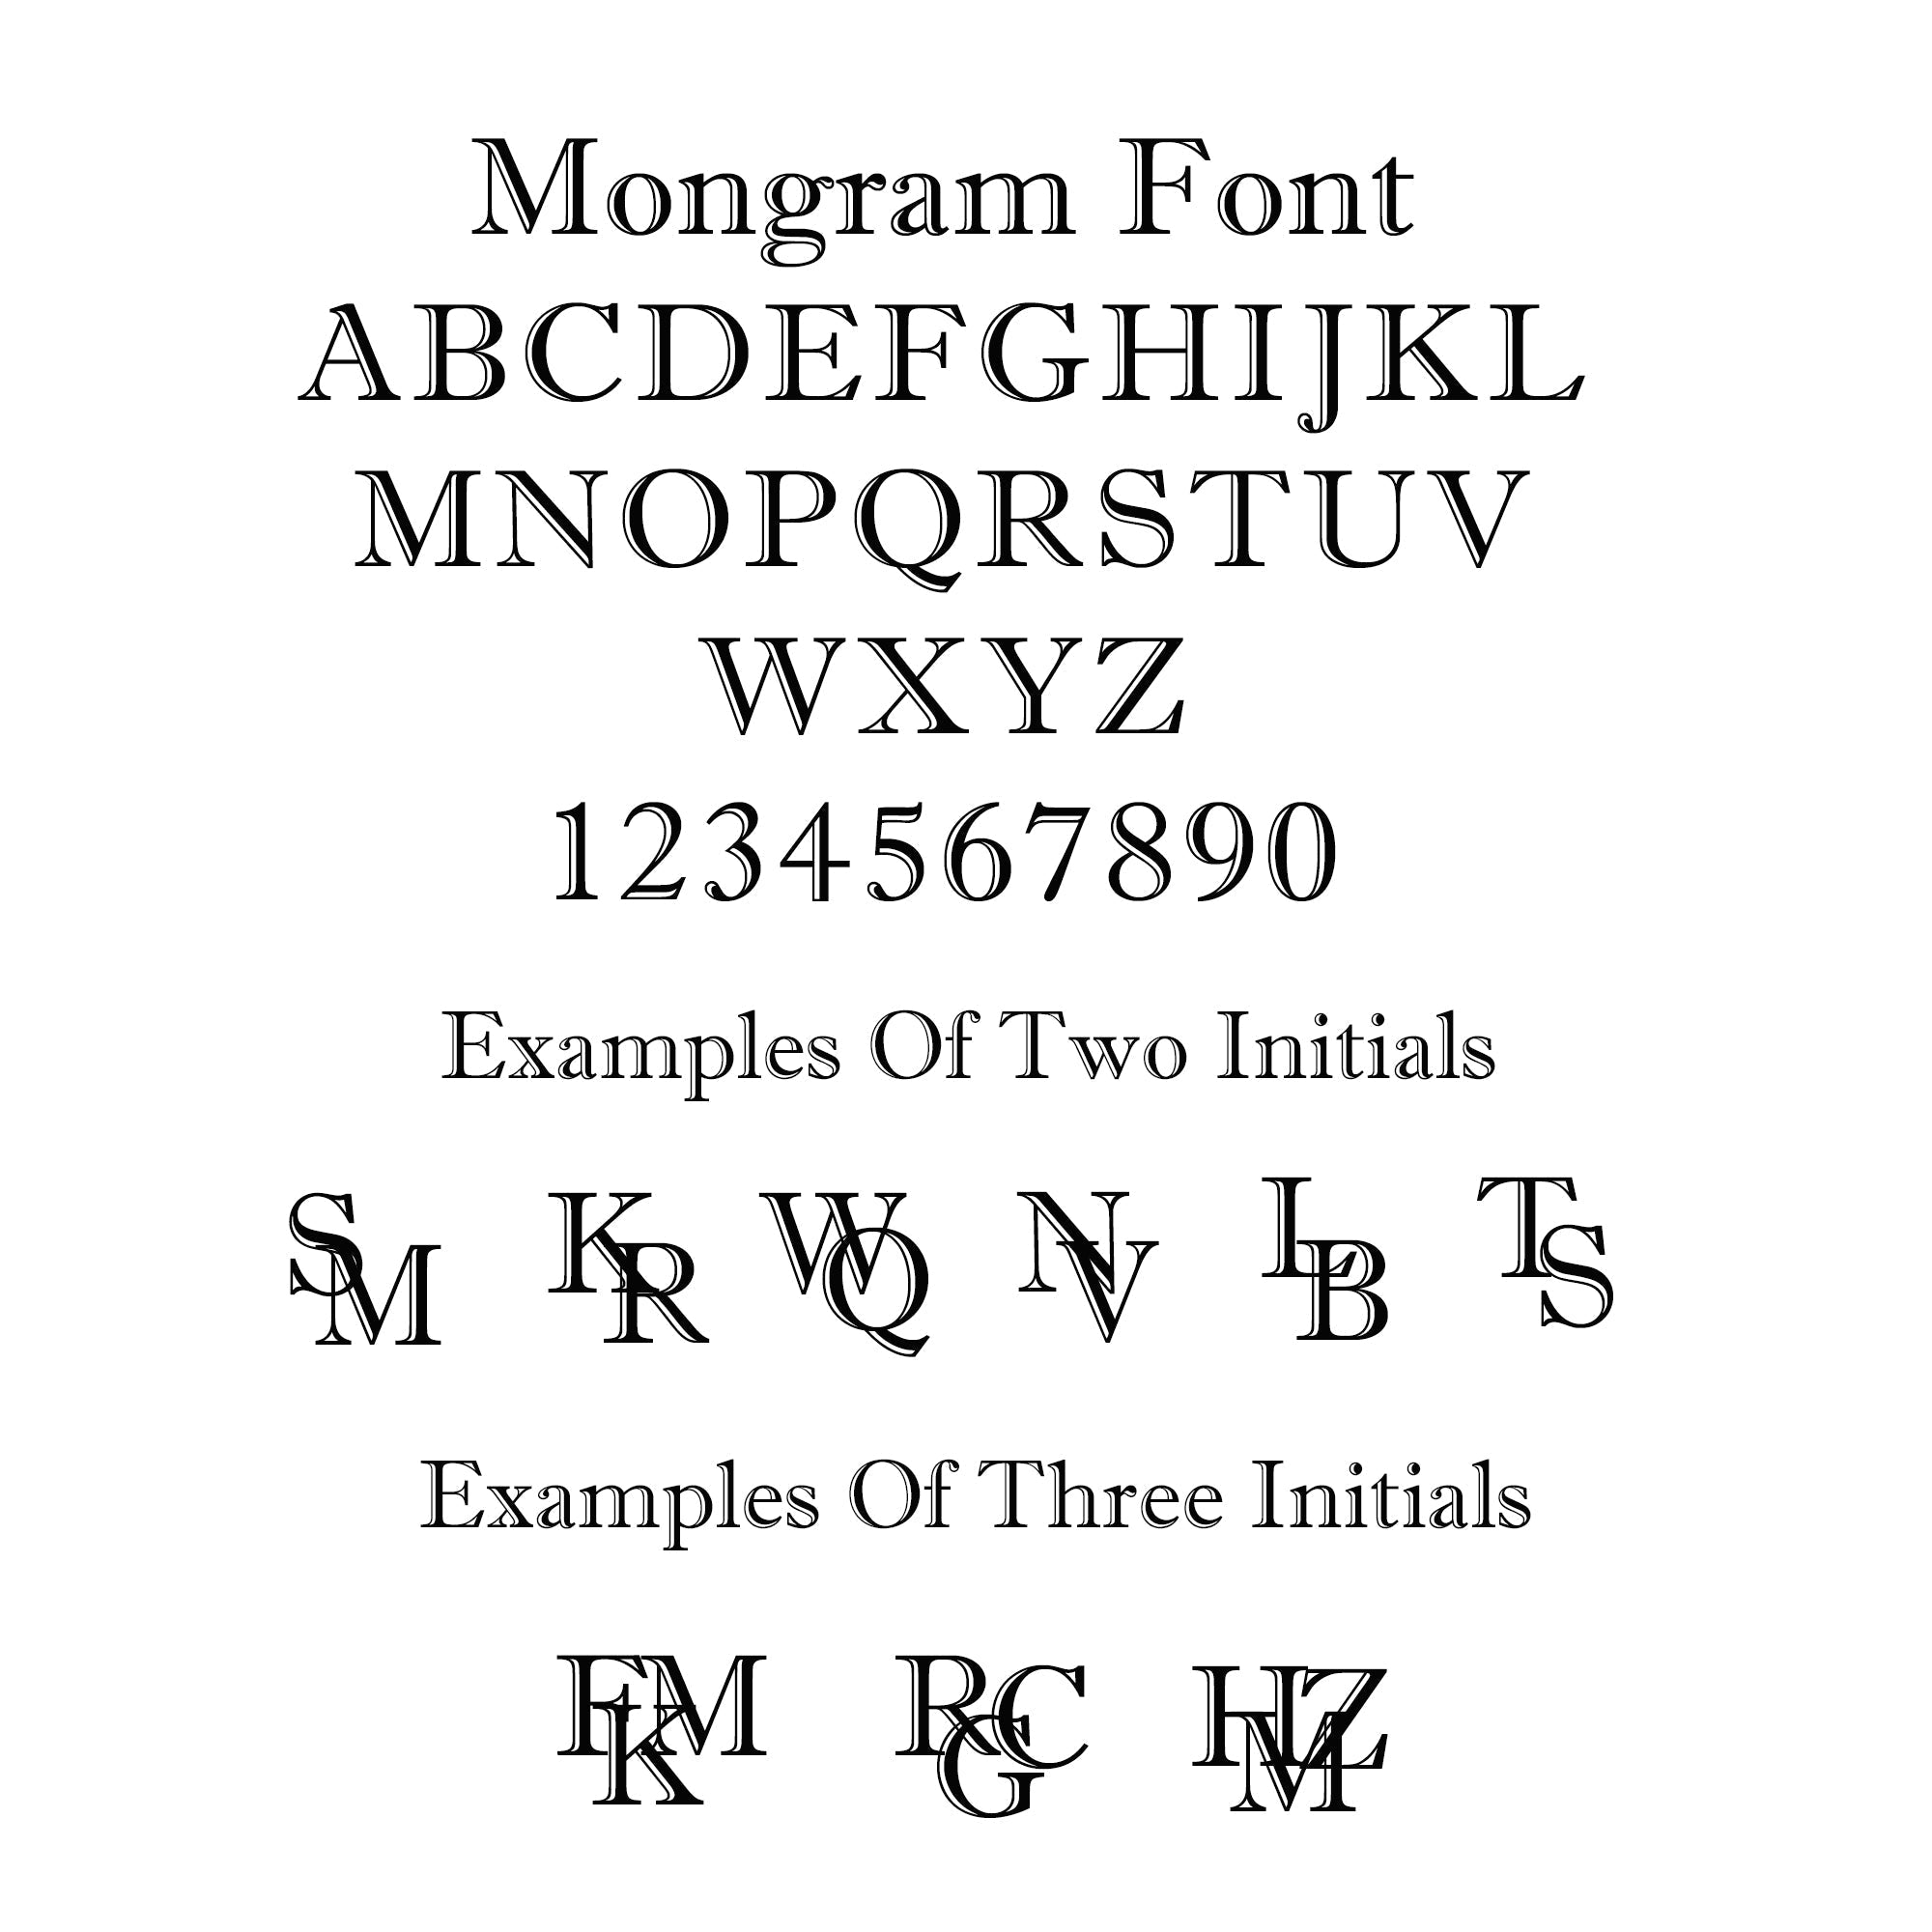 Monogram Initials Round Silver Signet Ring - 2 Initials